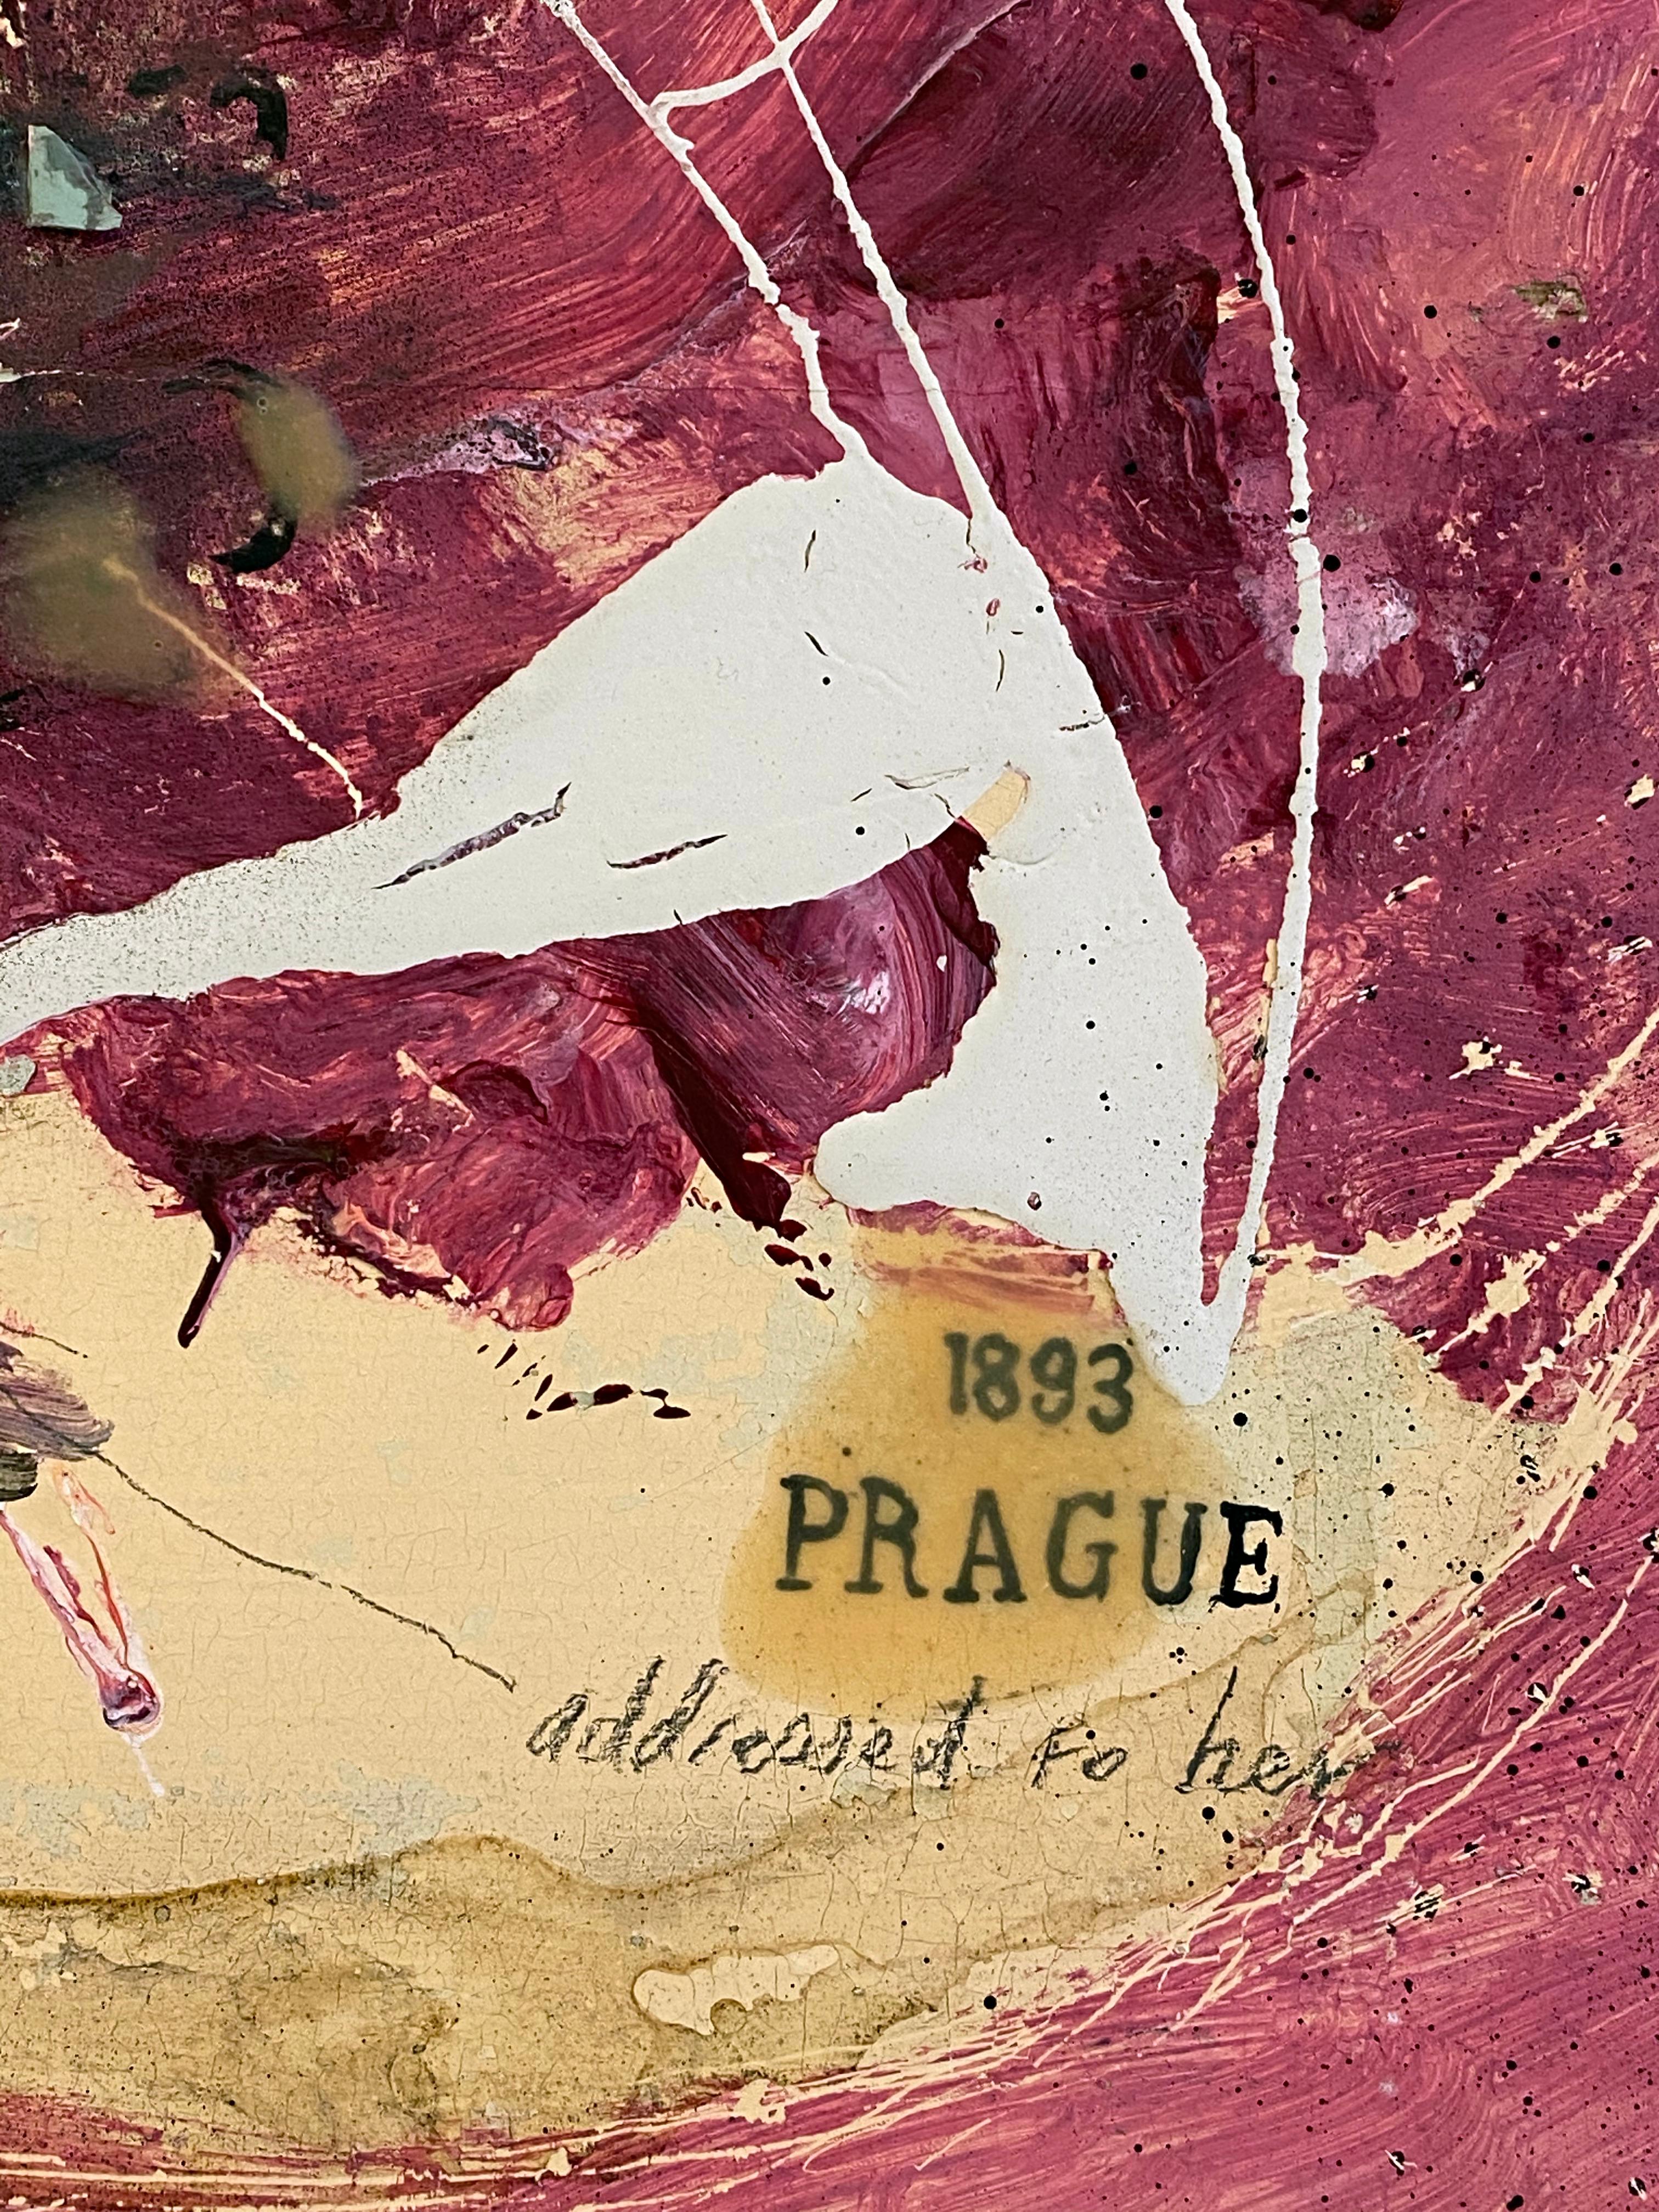 1893 PRAG
2020
Paris, Frankreich

1893 Prag